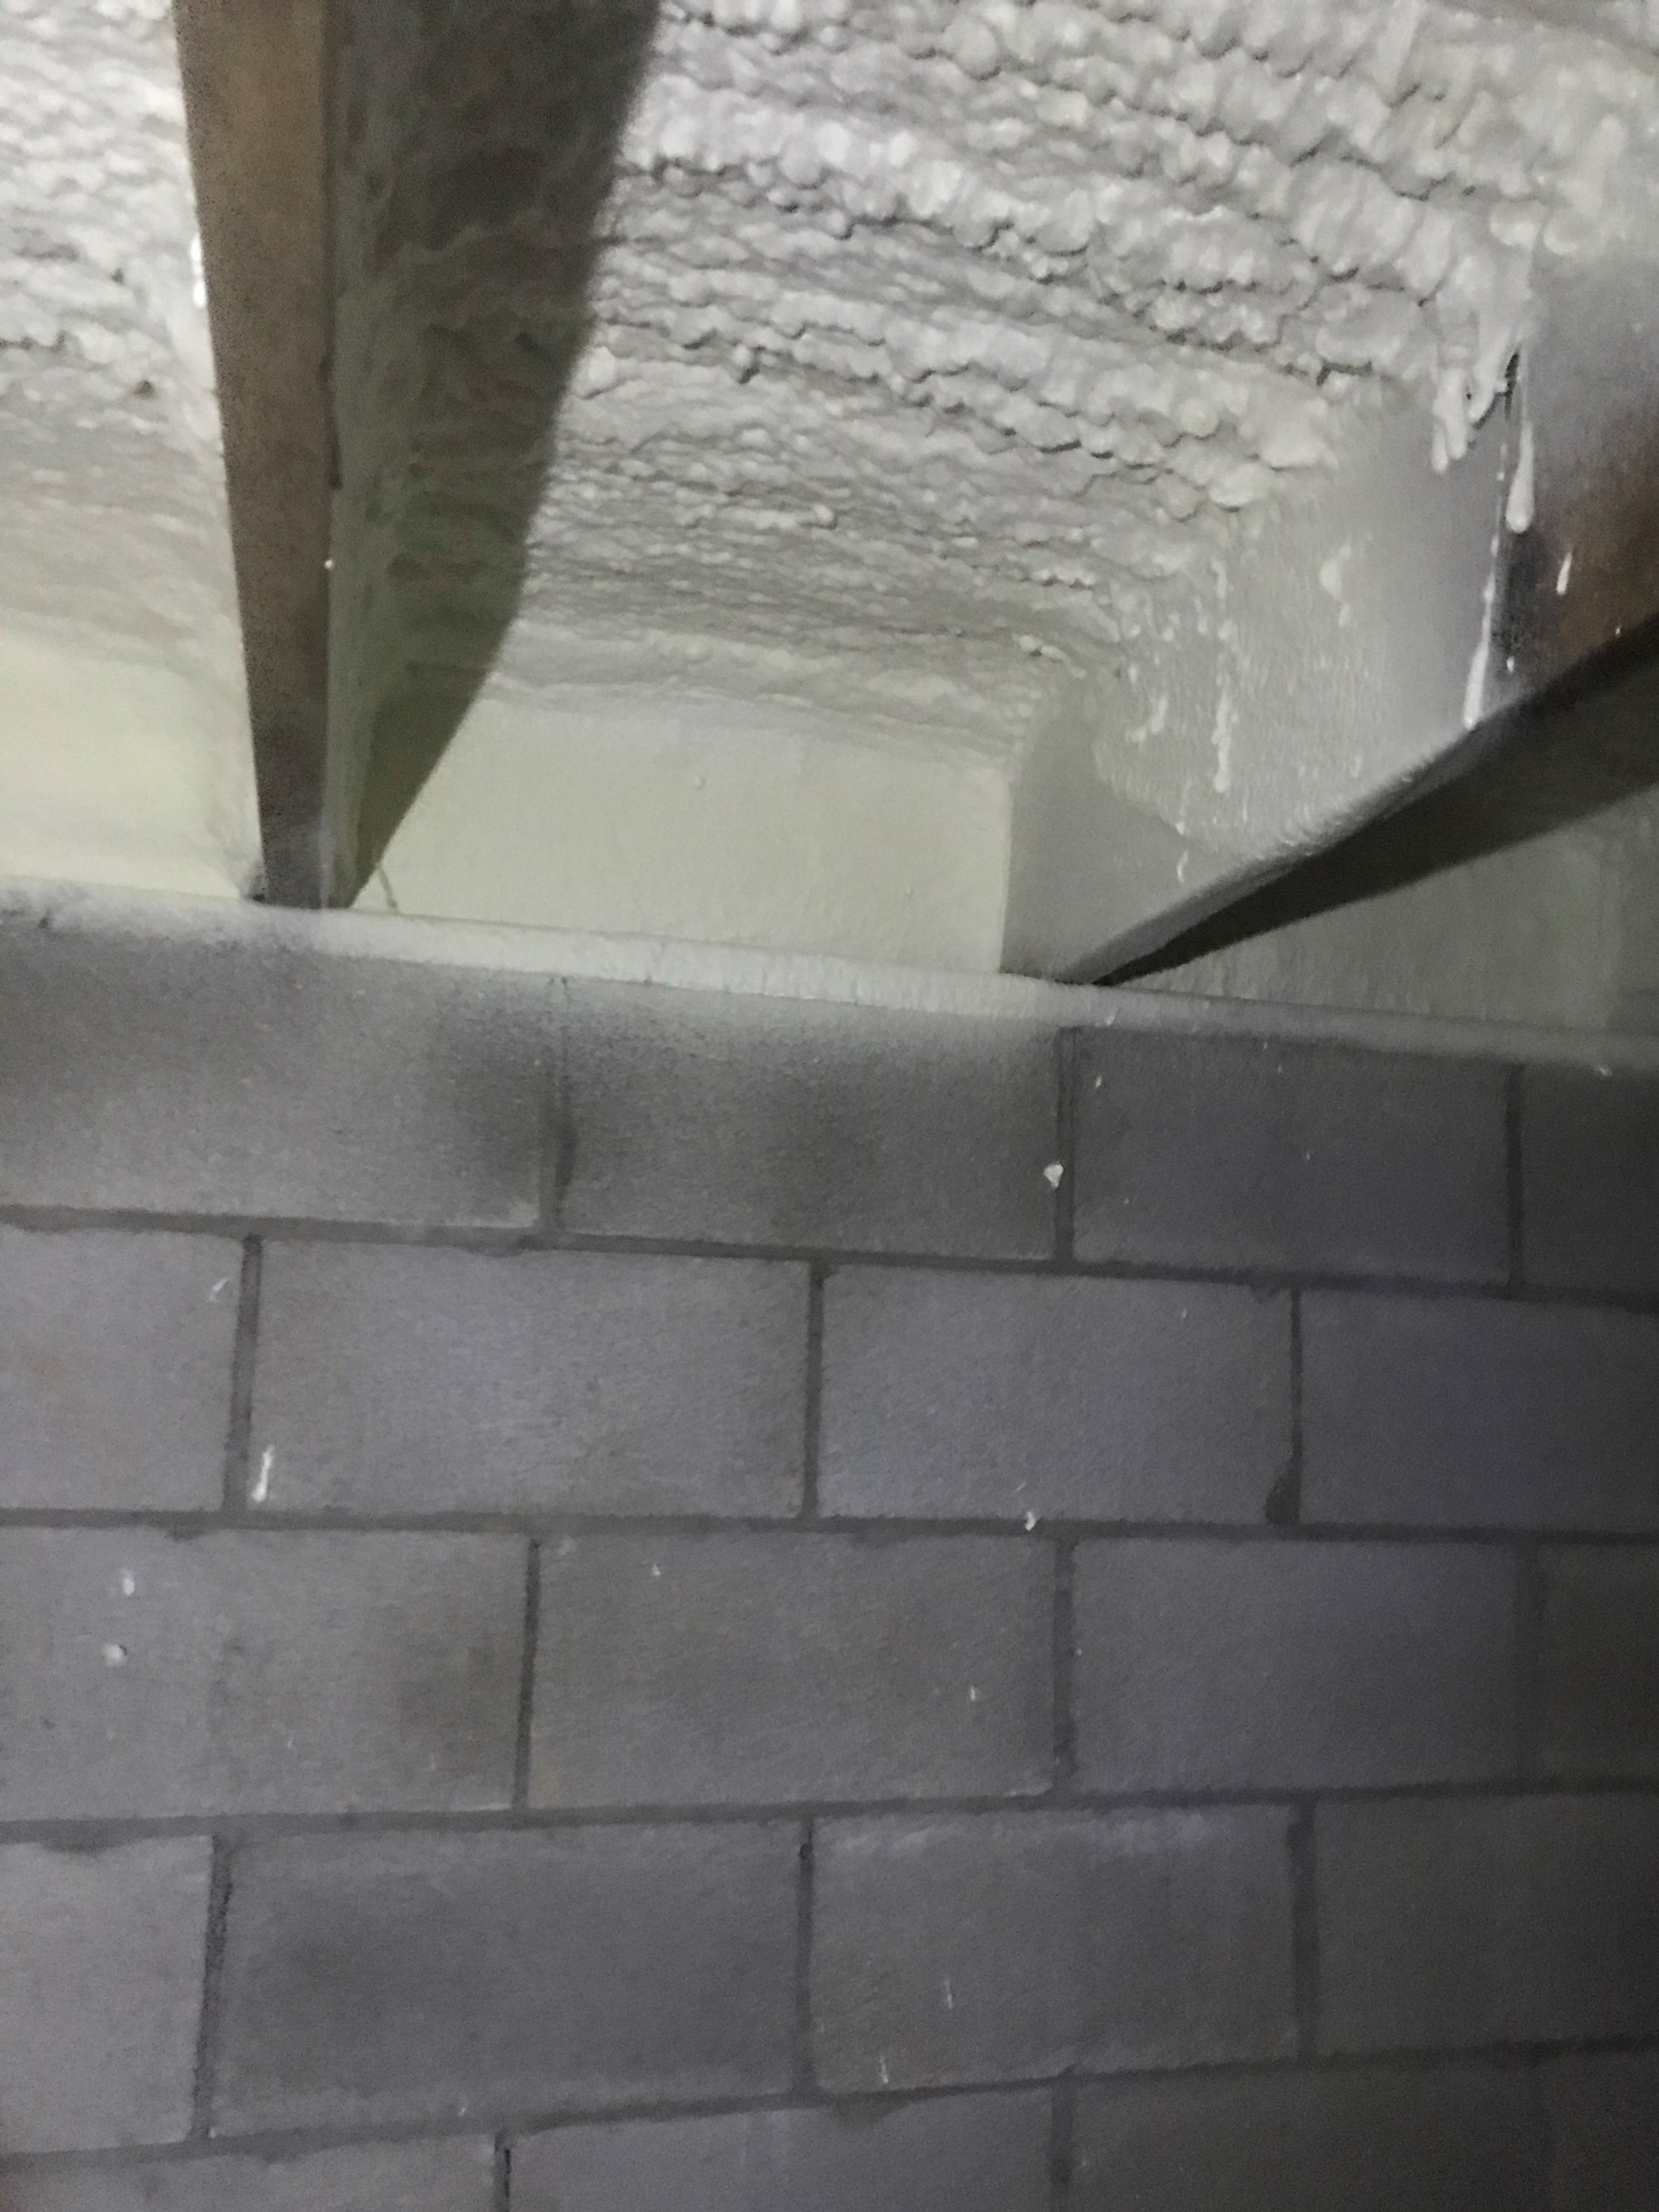 Clean edges of sub-floor insulation